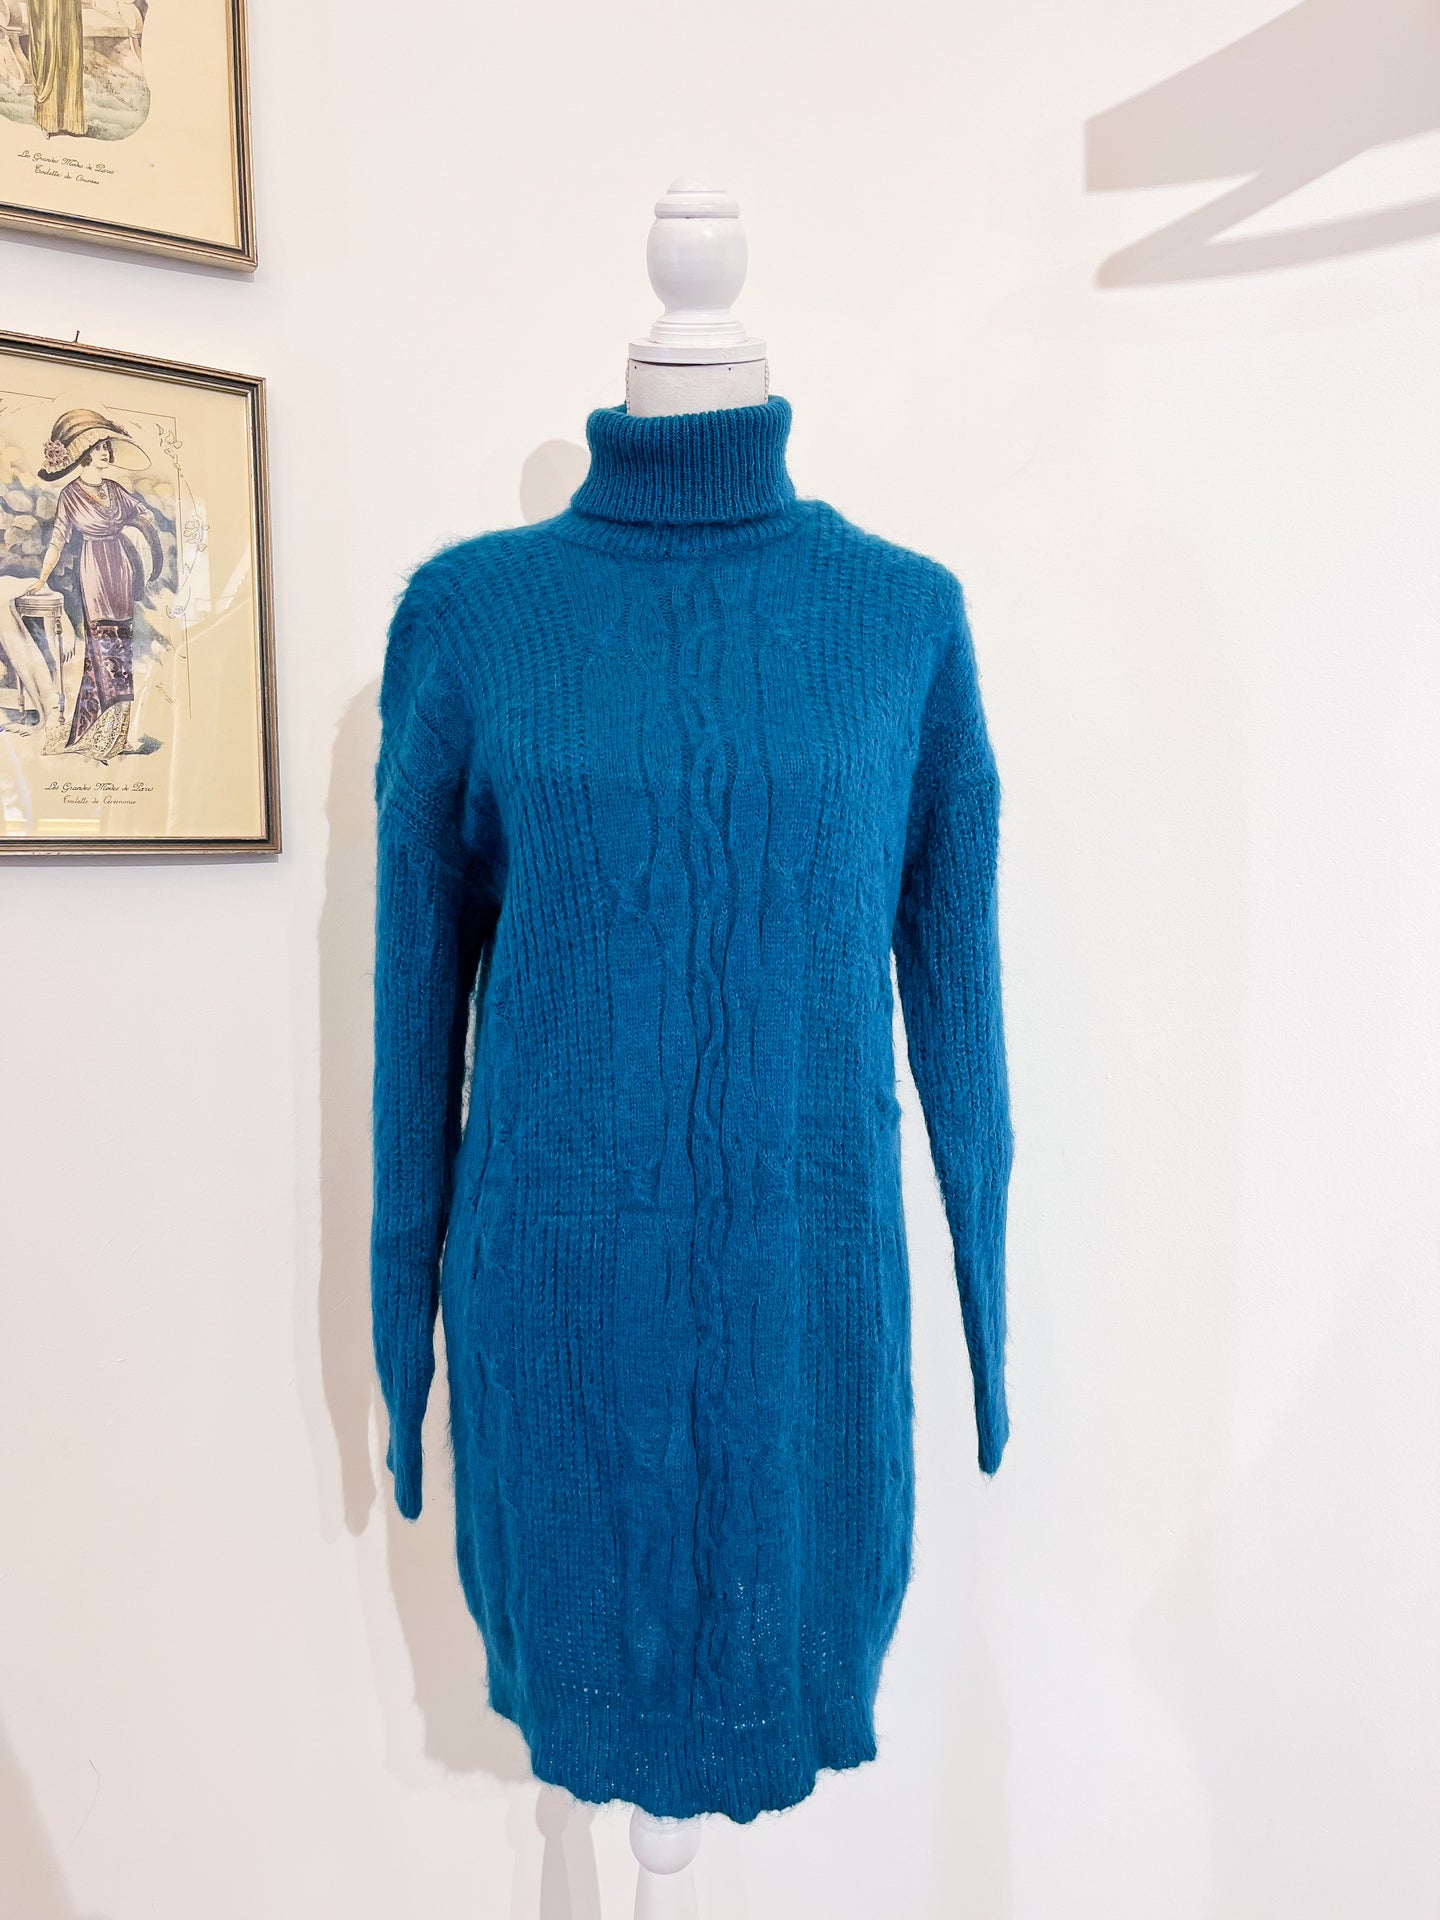 Maglione lungo/Mini abito - Taglia Unica